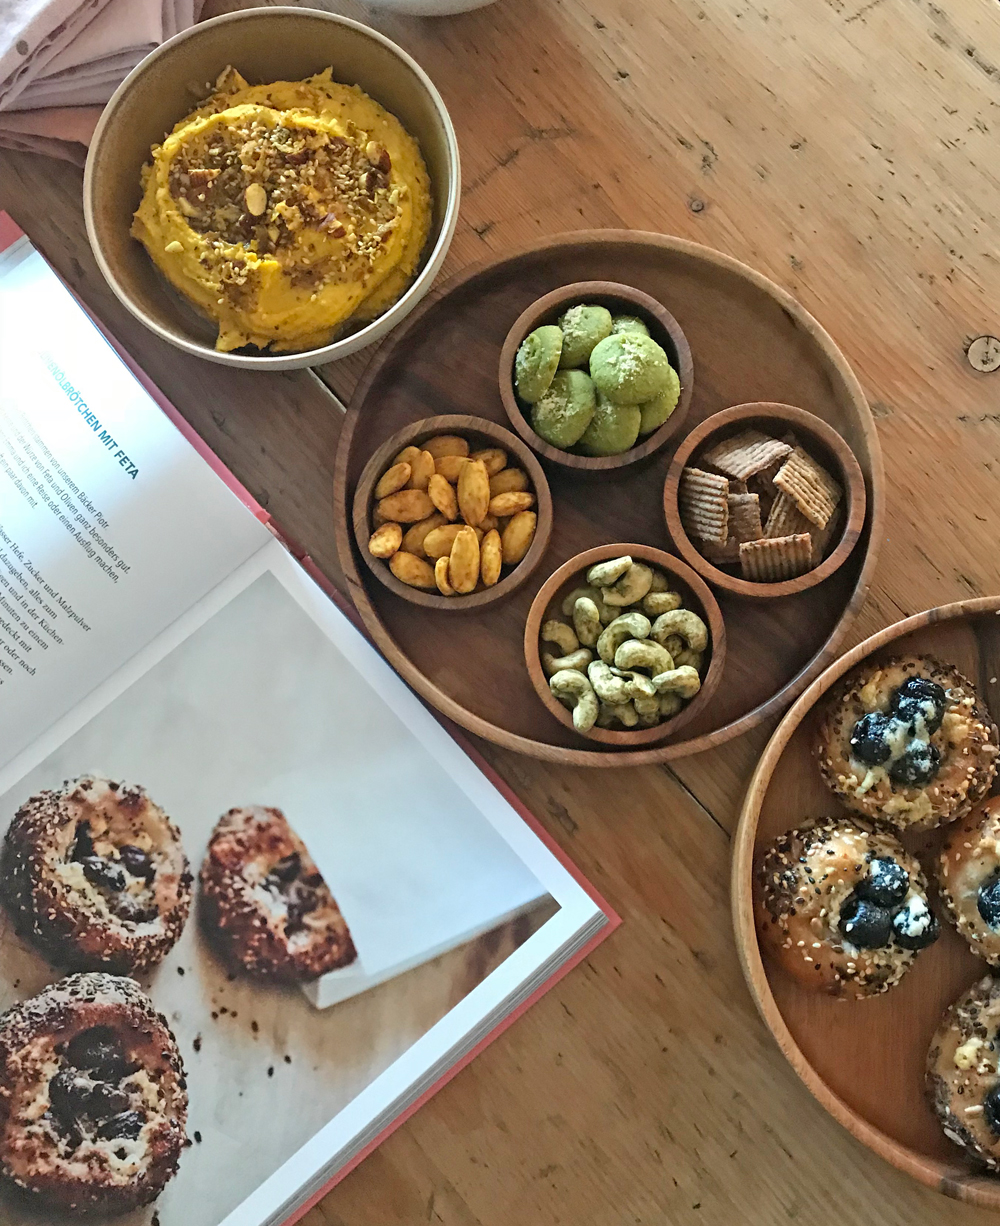 Sterneköchin Tanja Grandits zeigt in ihrem sechsten Buch "Tanjas Kochbuch" eine Sammlung ihrer Lieblingsrezepte aus dem Alltag, die einfach zu machen sind - und köstlich schmecken! 